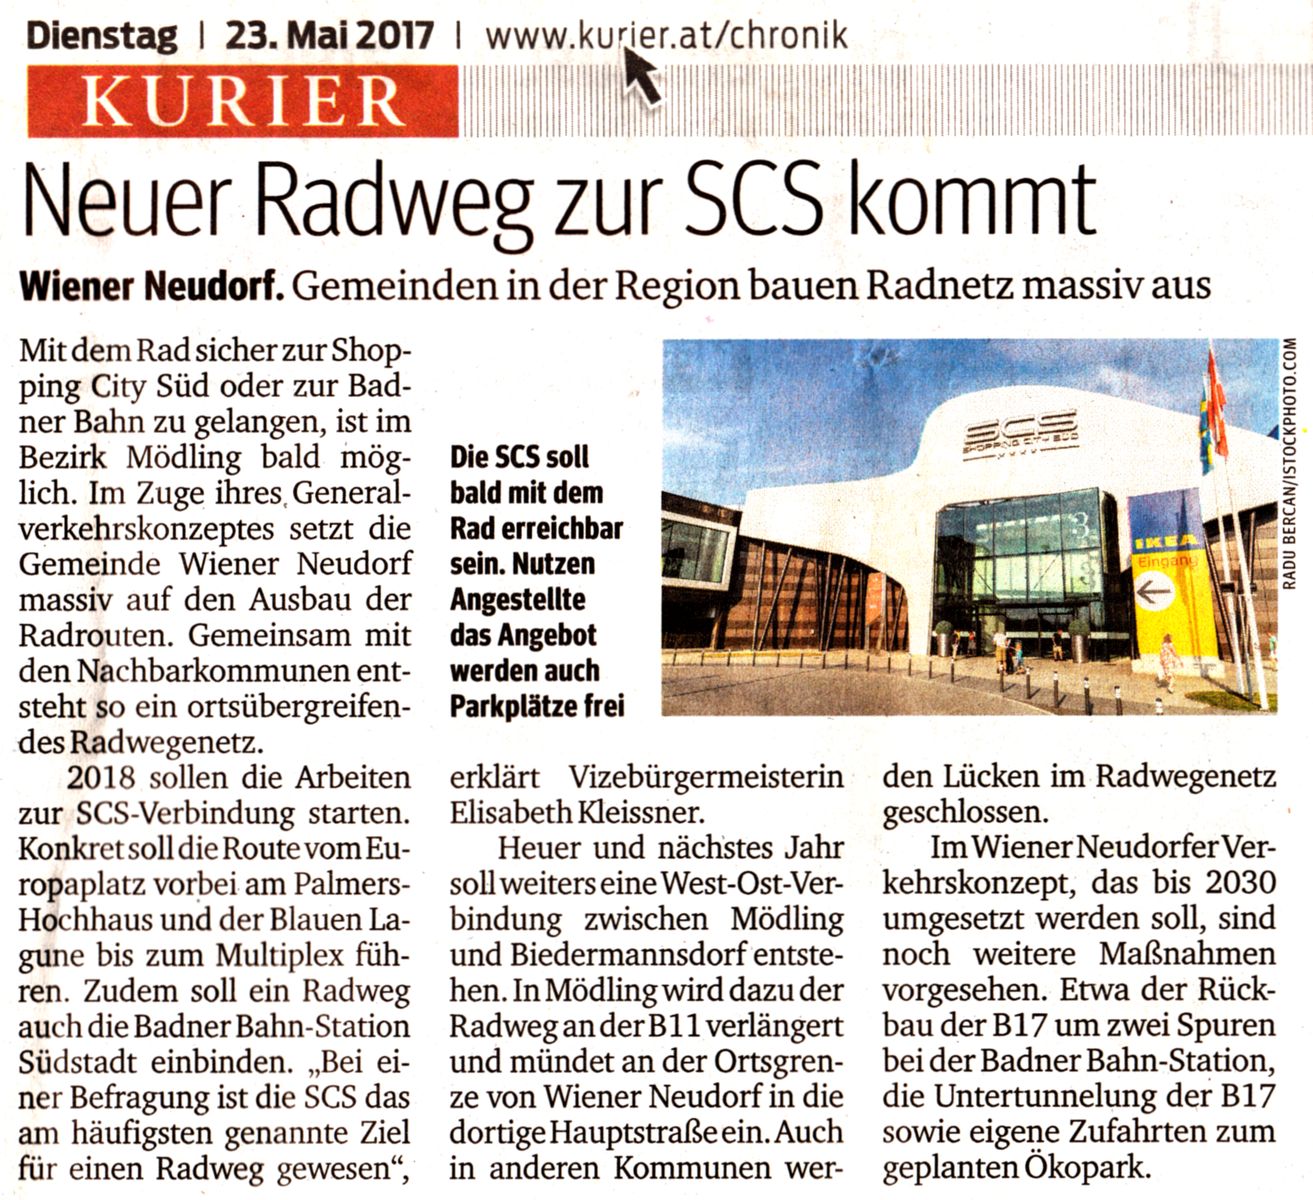 Kurier-Zeitungsartikel "Neuer Radweg zur SCS kommt